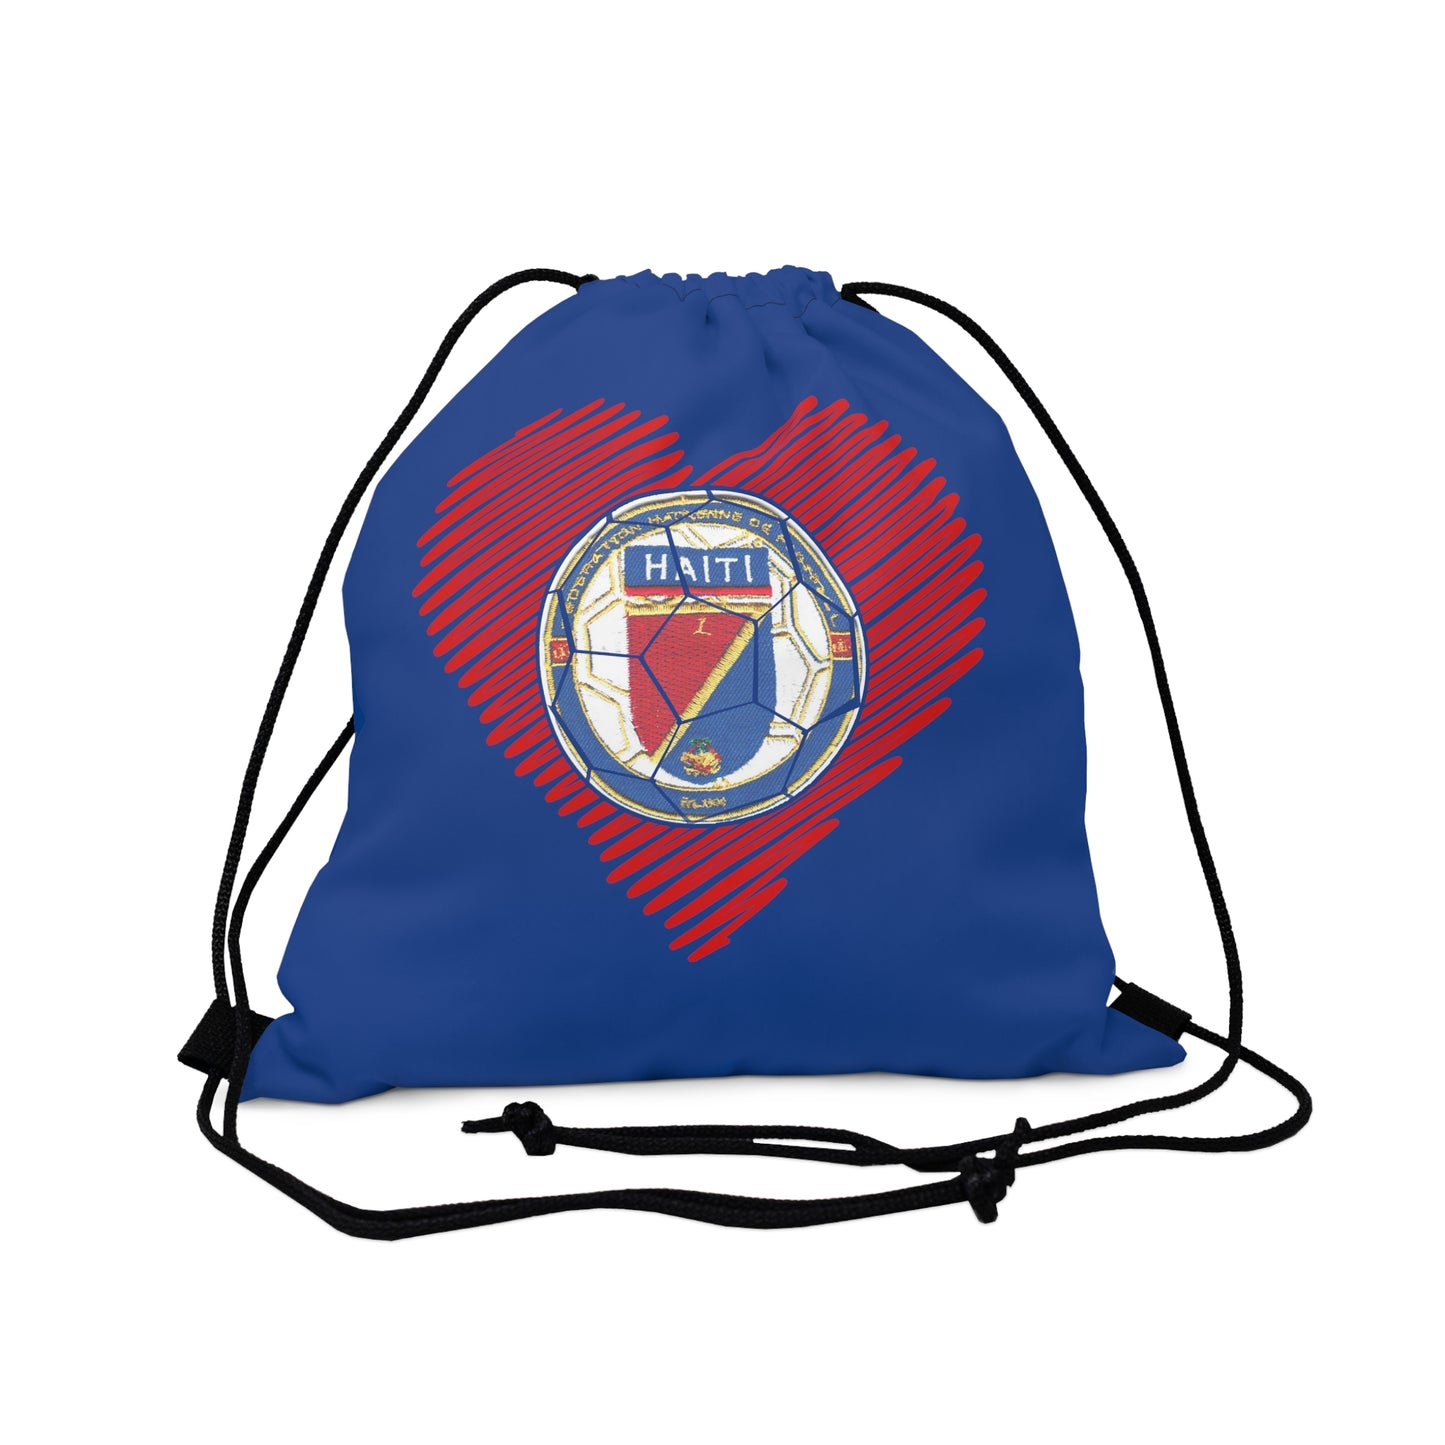 Haiti Futbol Outdoor Drawstring Bag